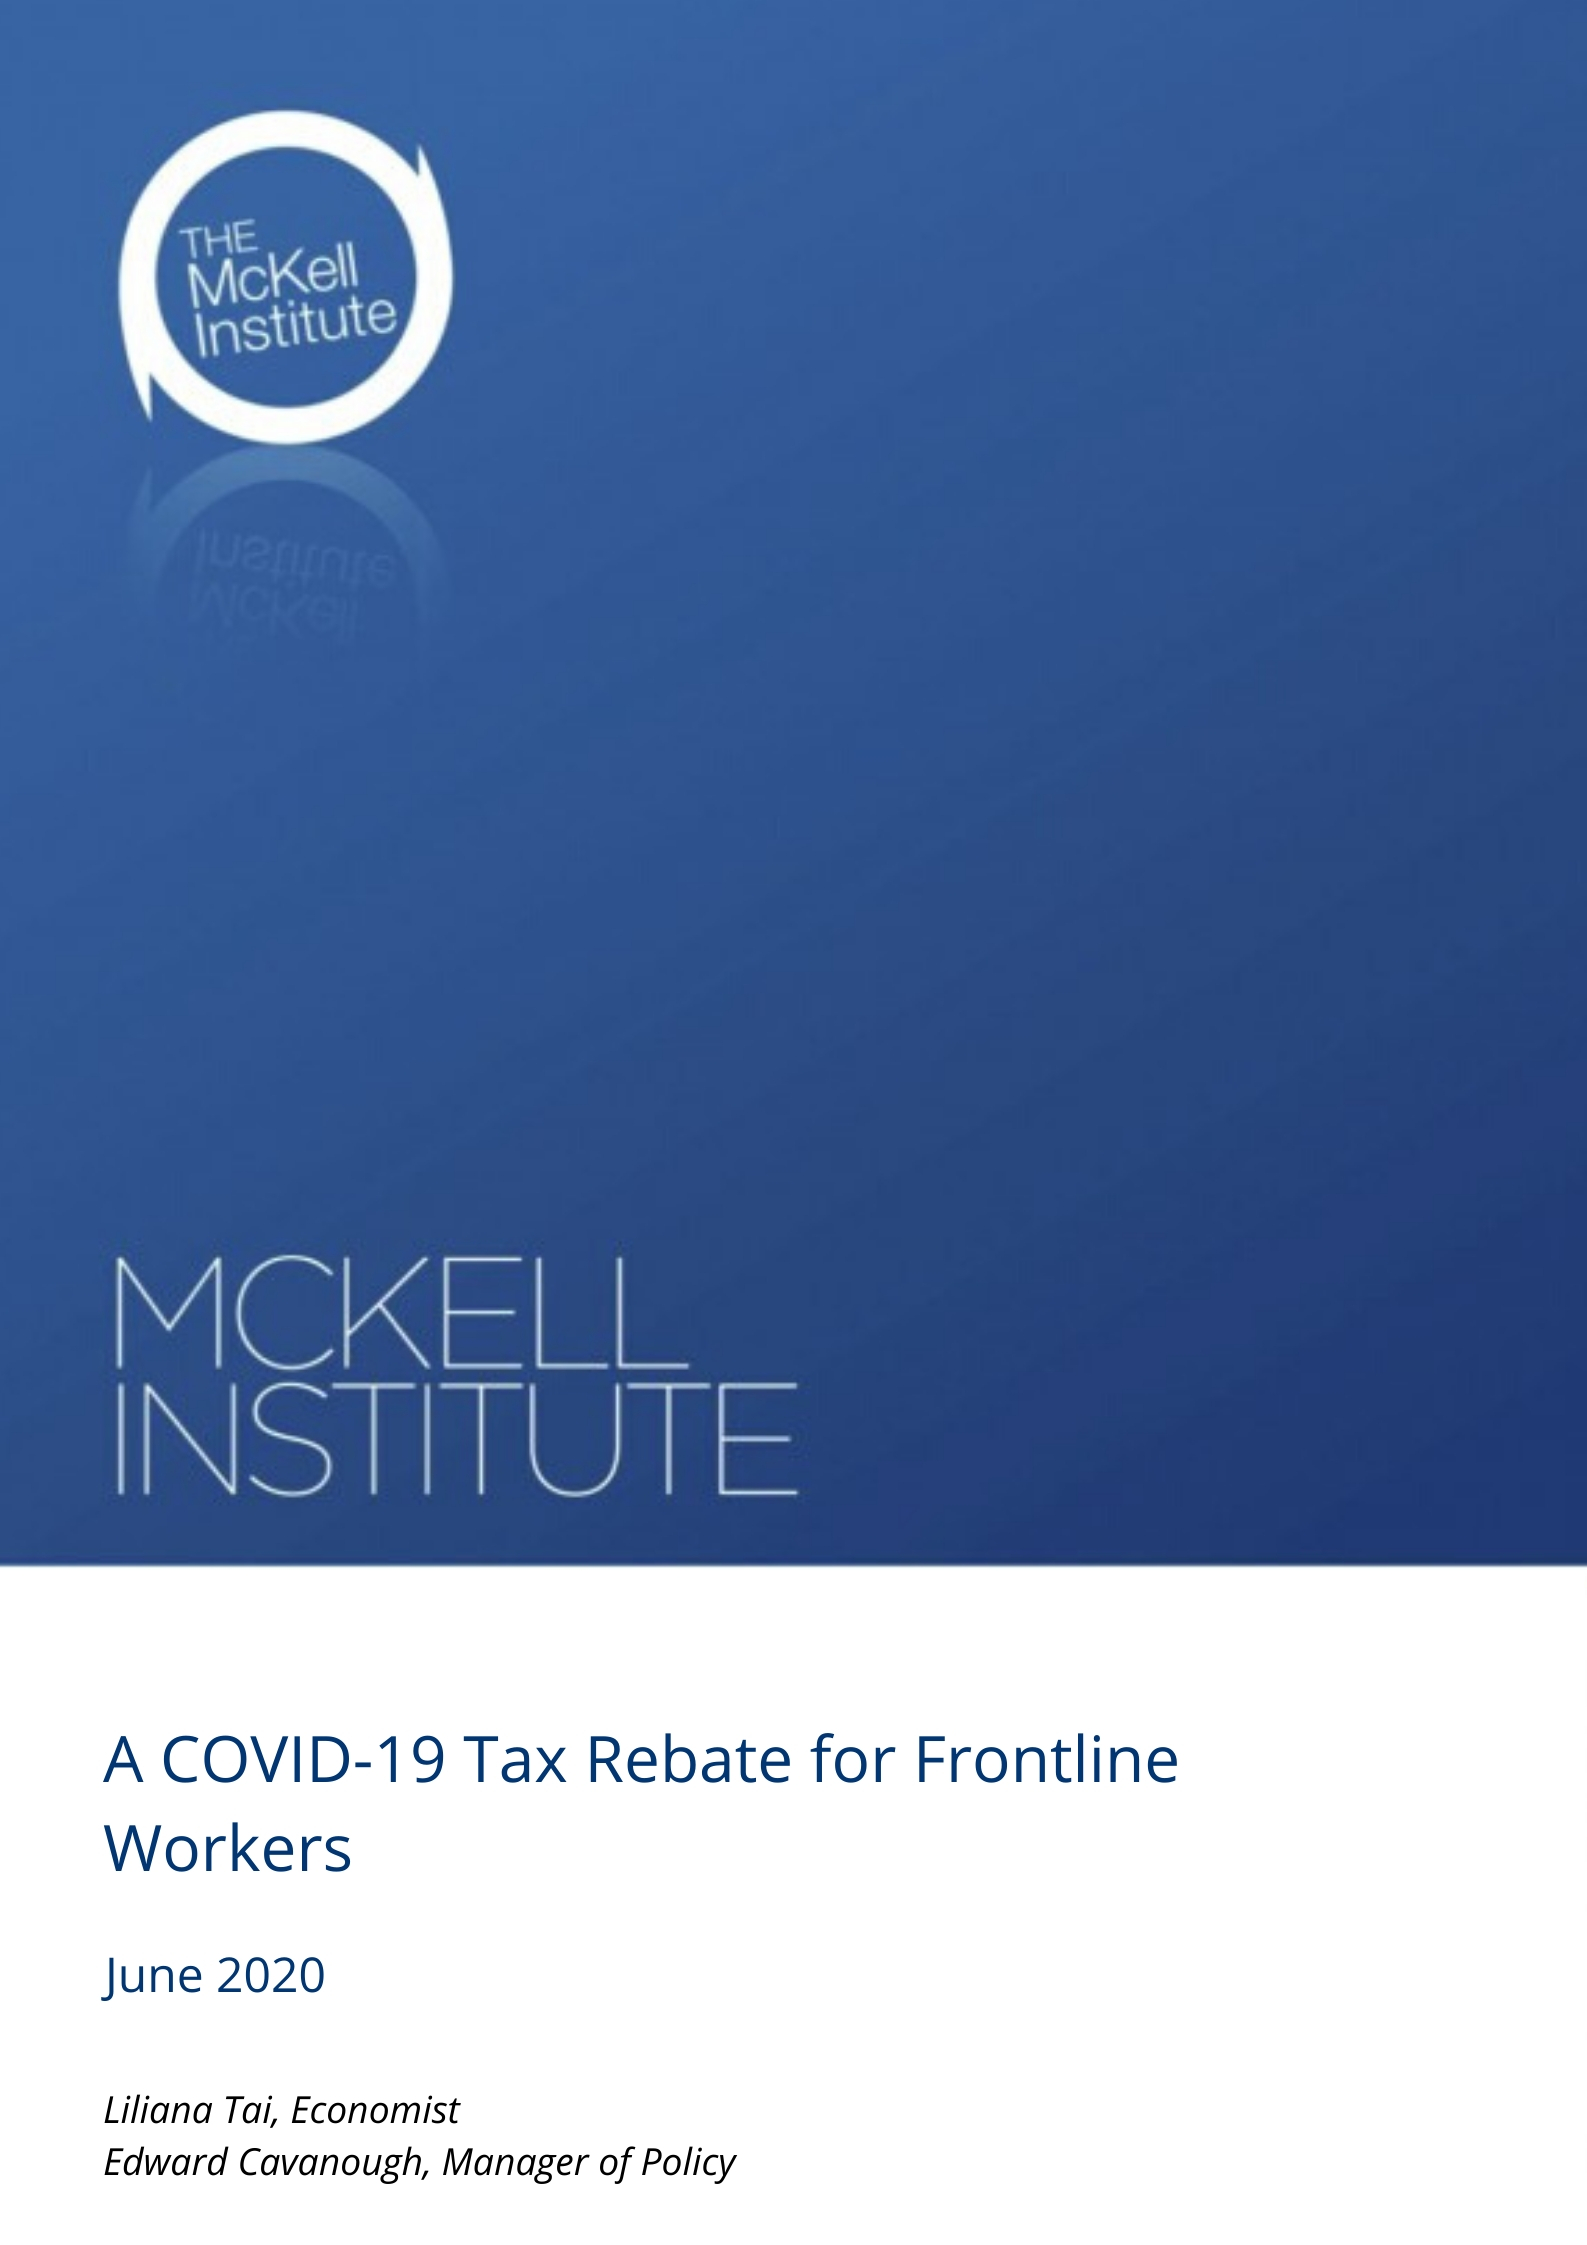 Covid Tax Rebate Ireland